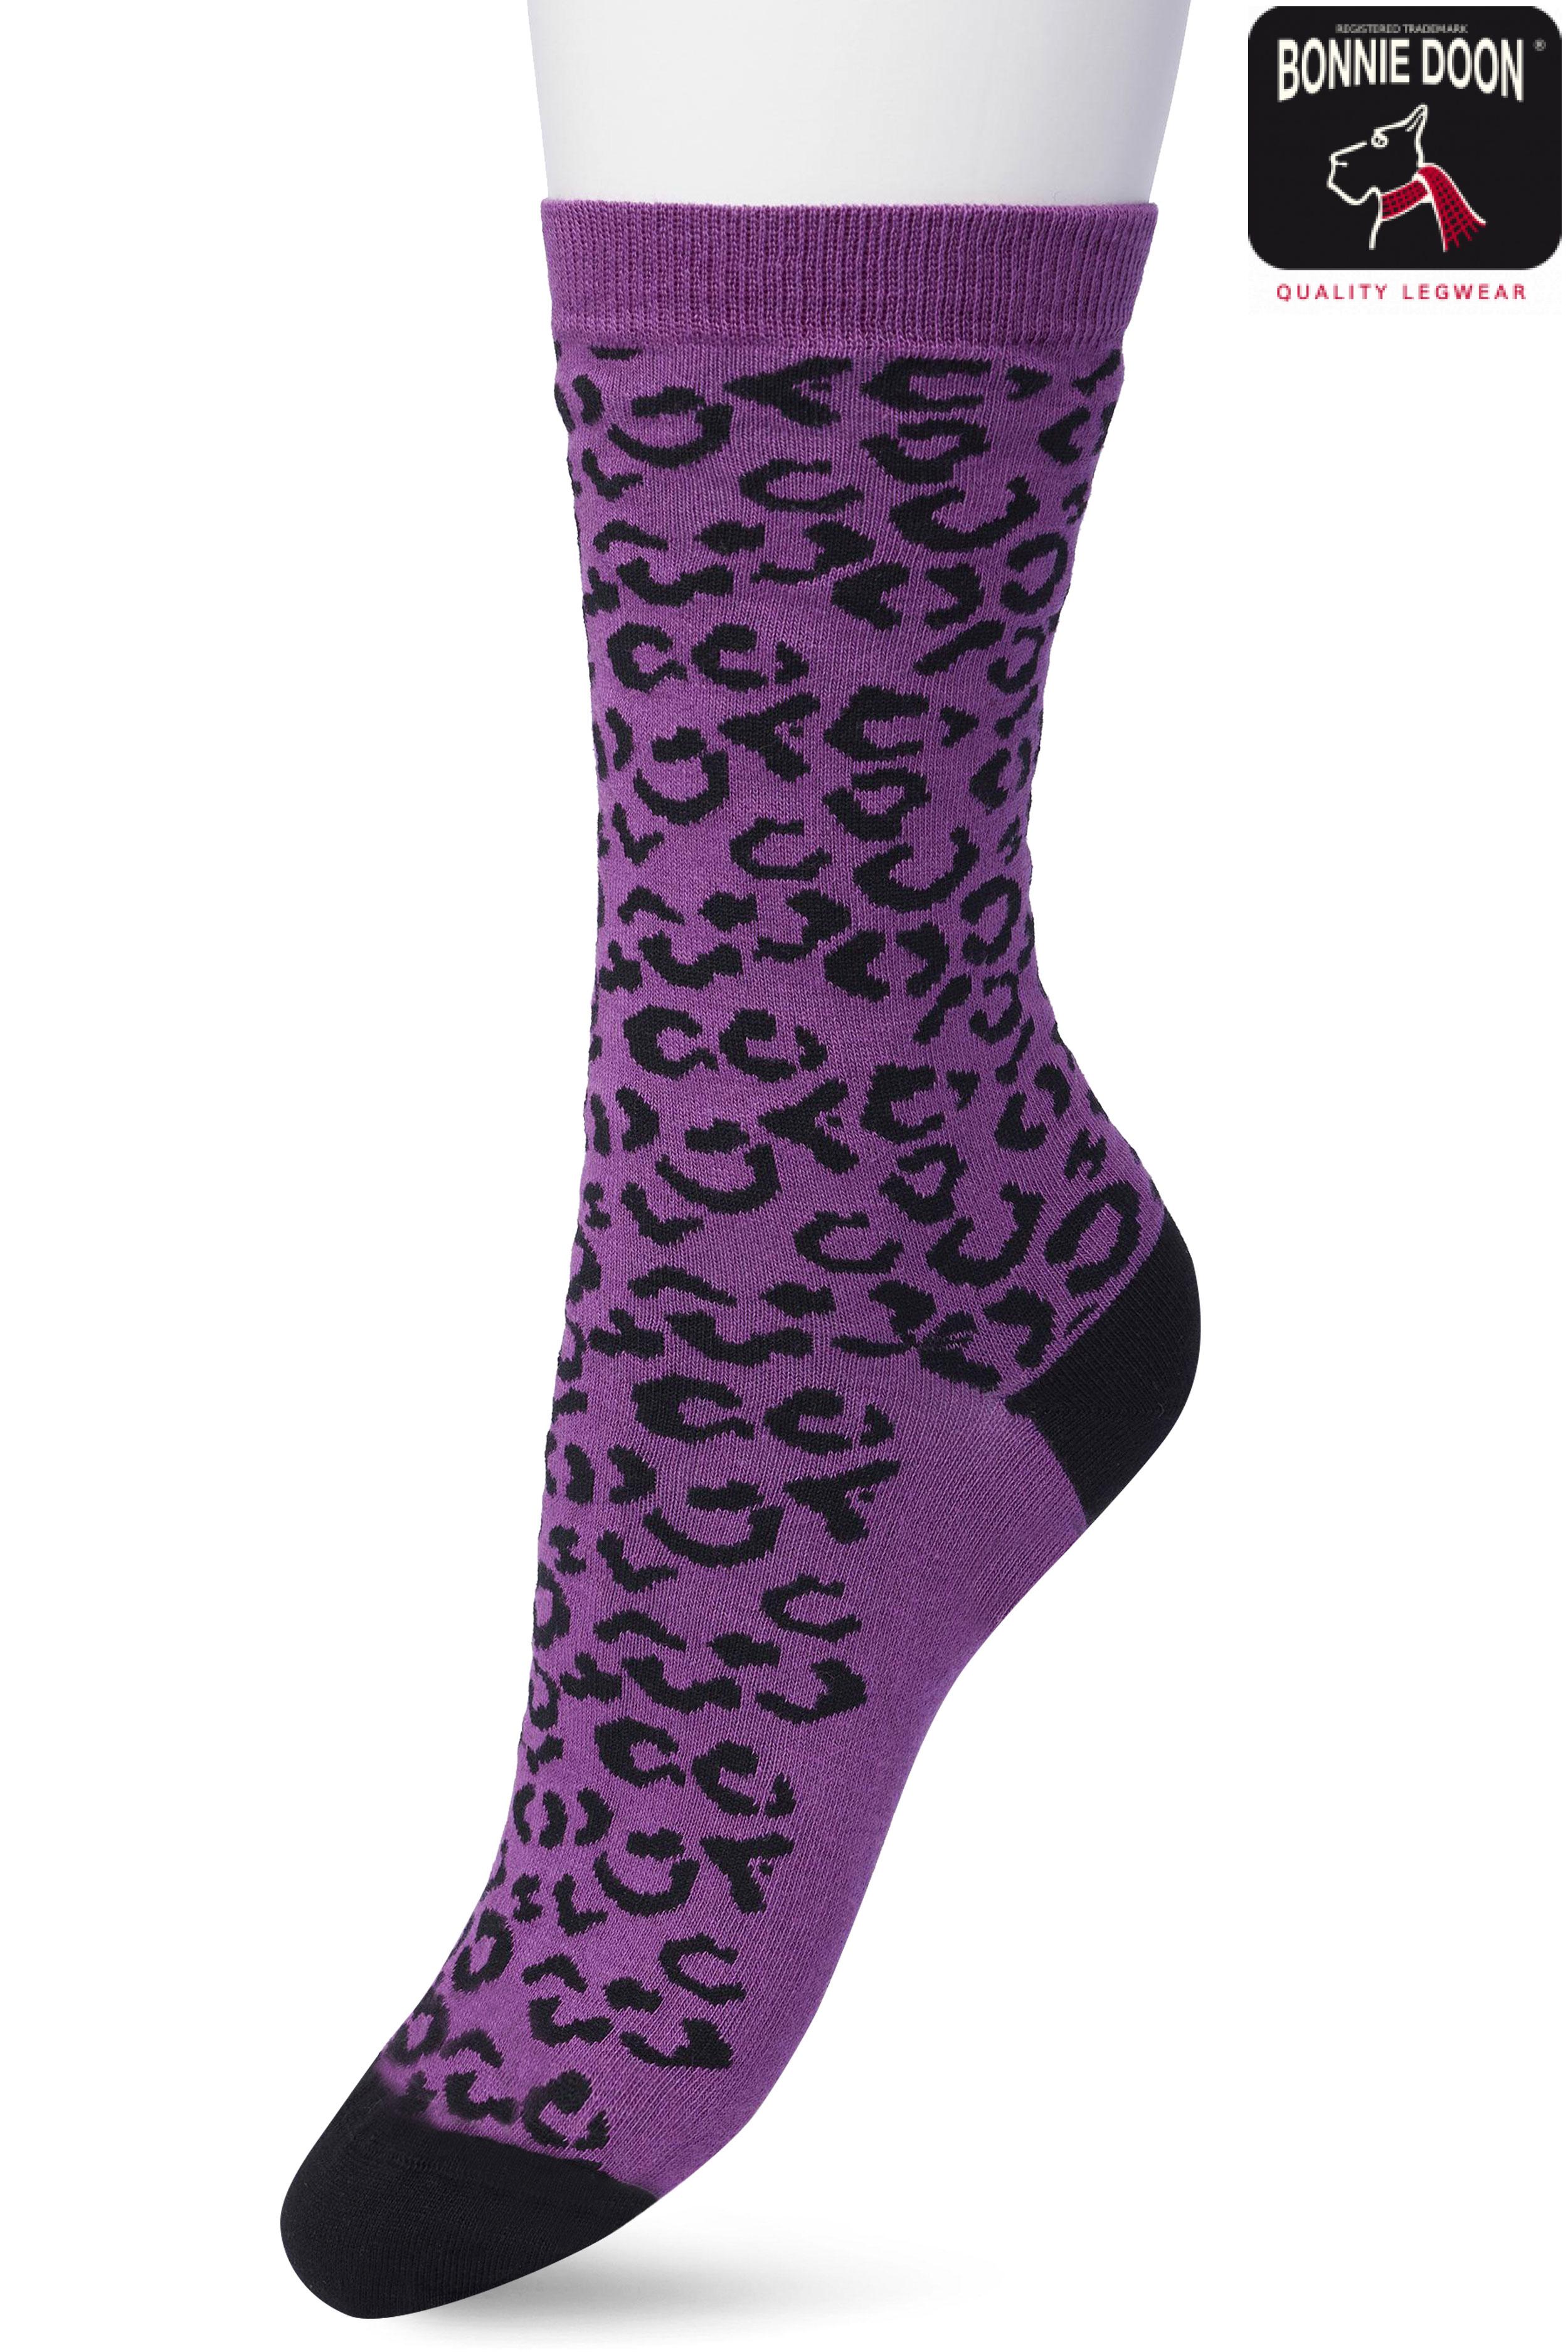 Leopard sock Concord grape